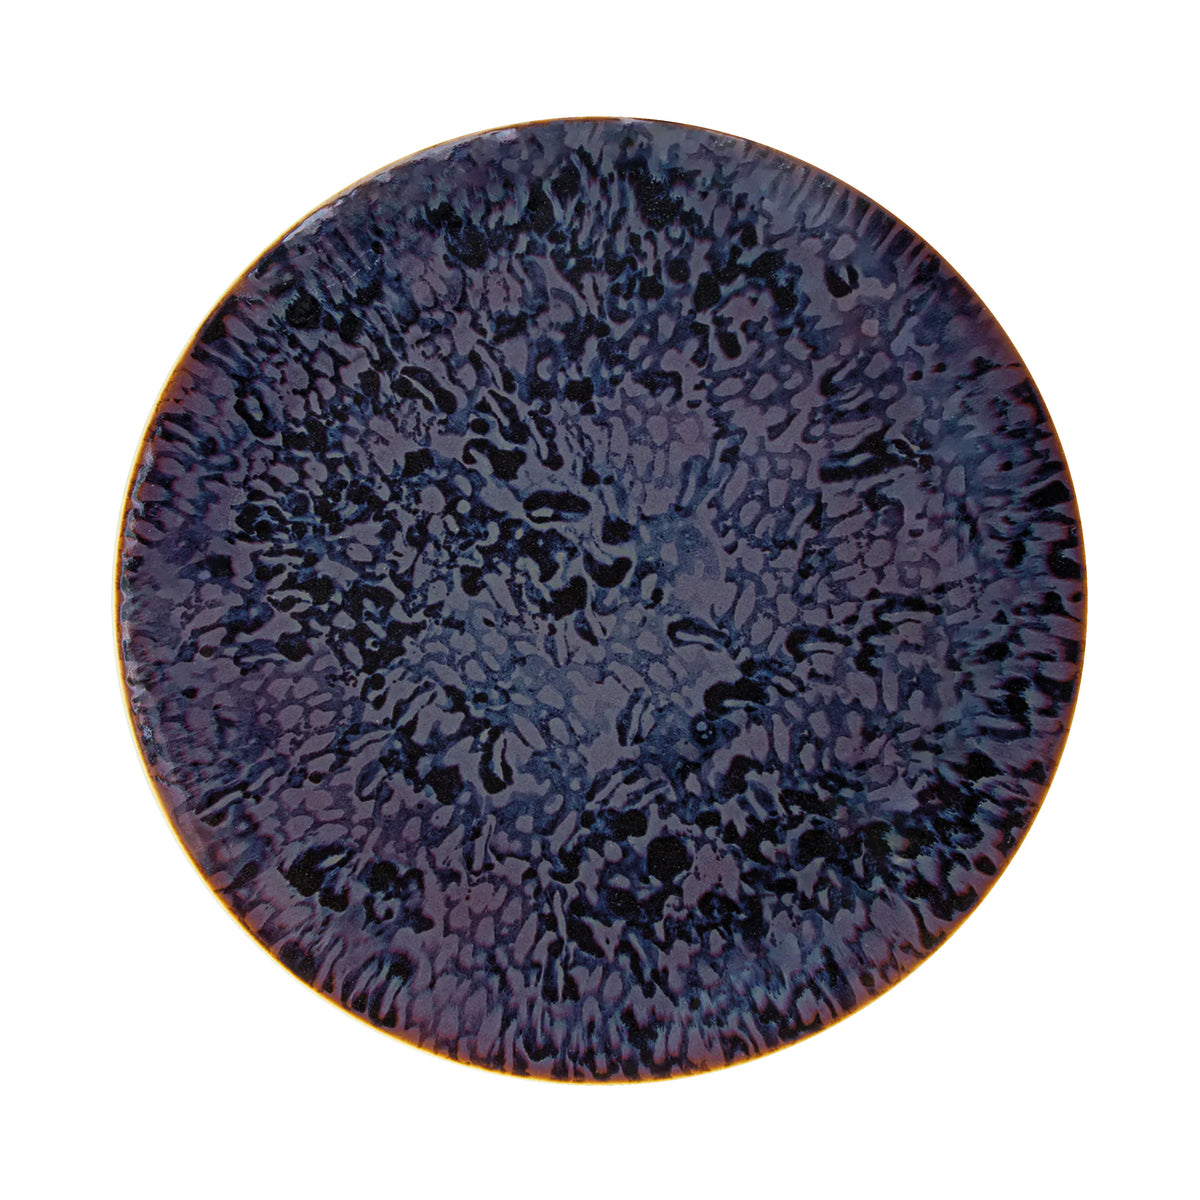 KASHMIR color net - 29 cm plate